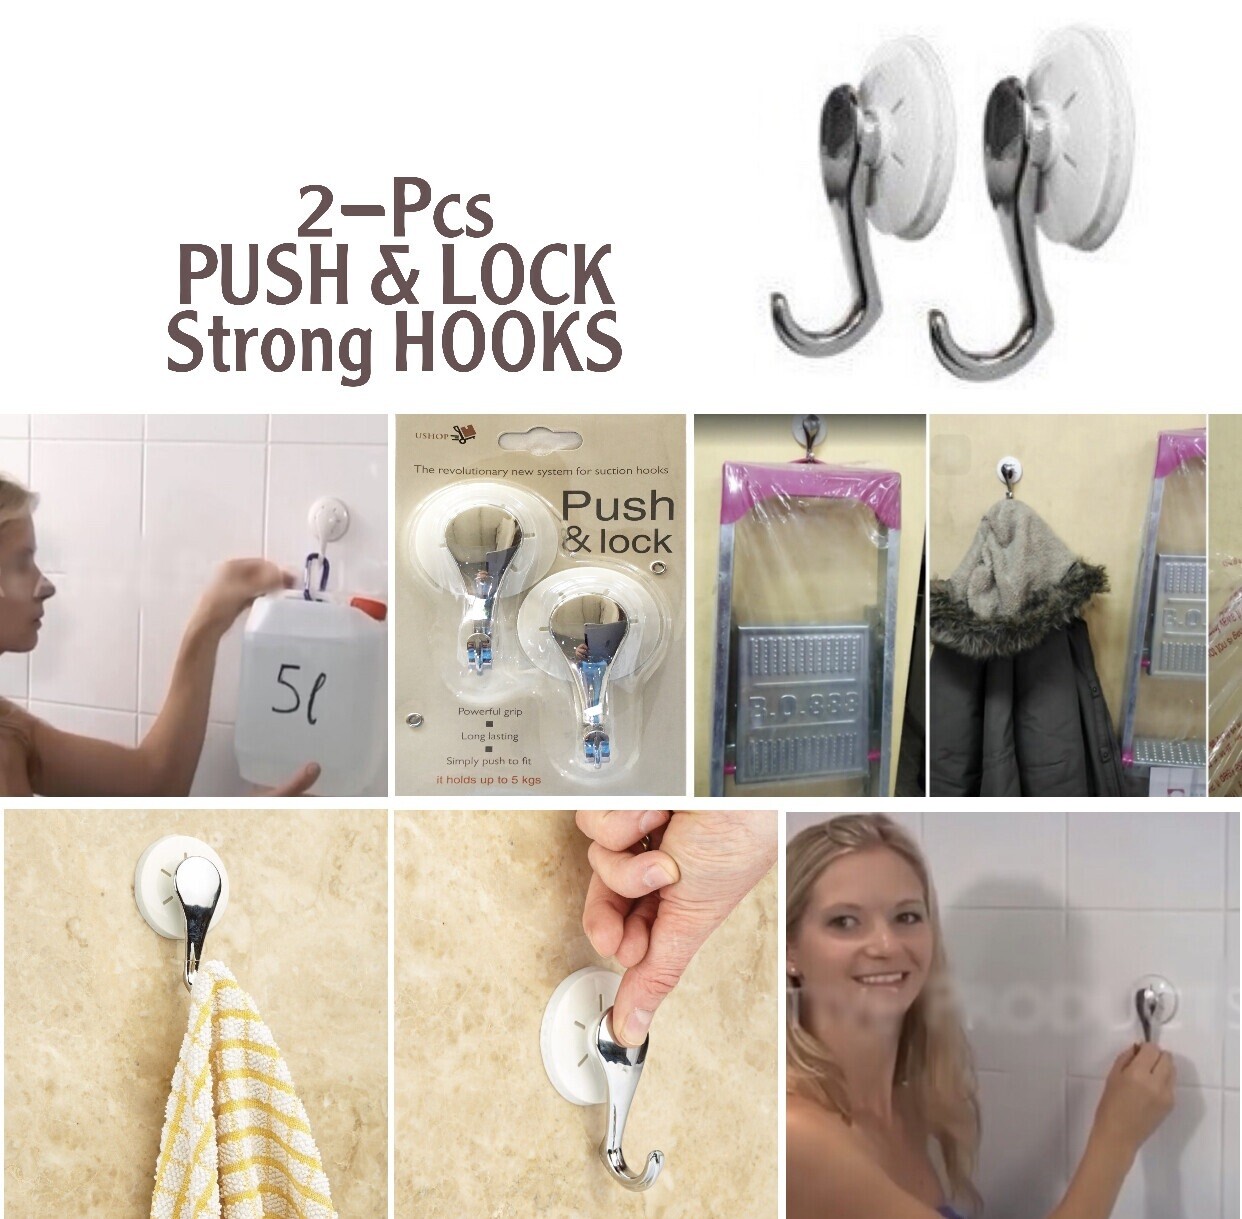 2-Pcs Push & Lock Hooks